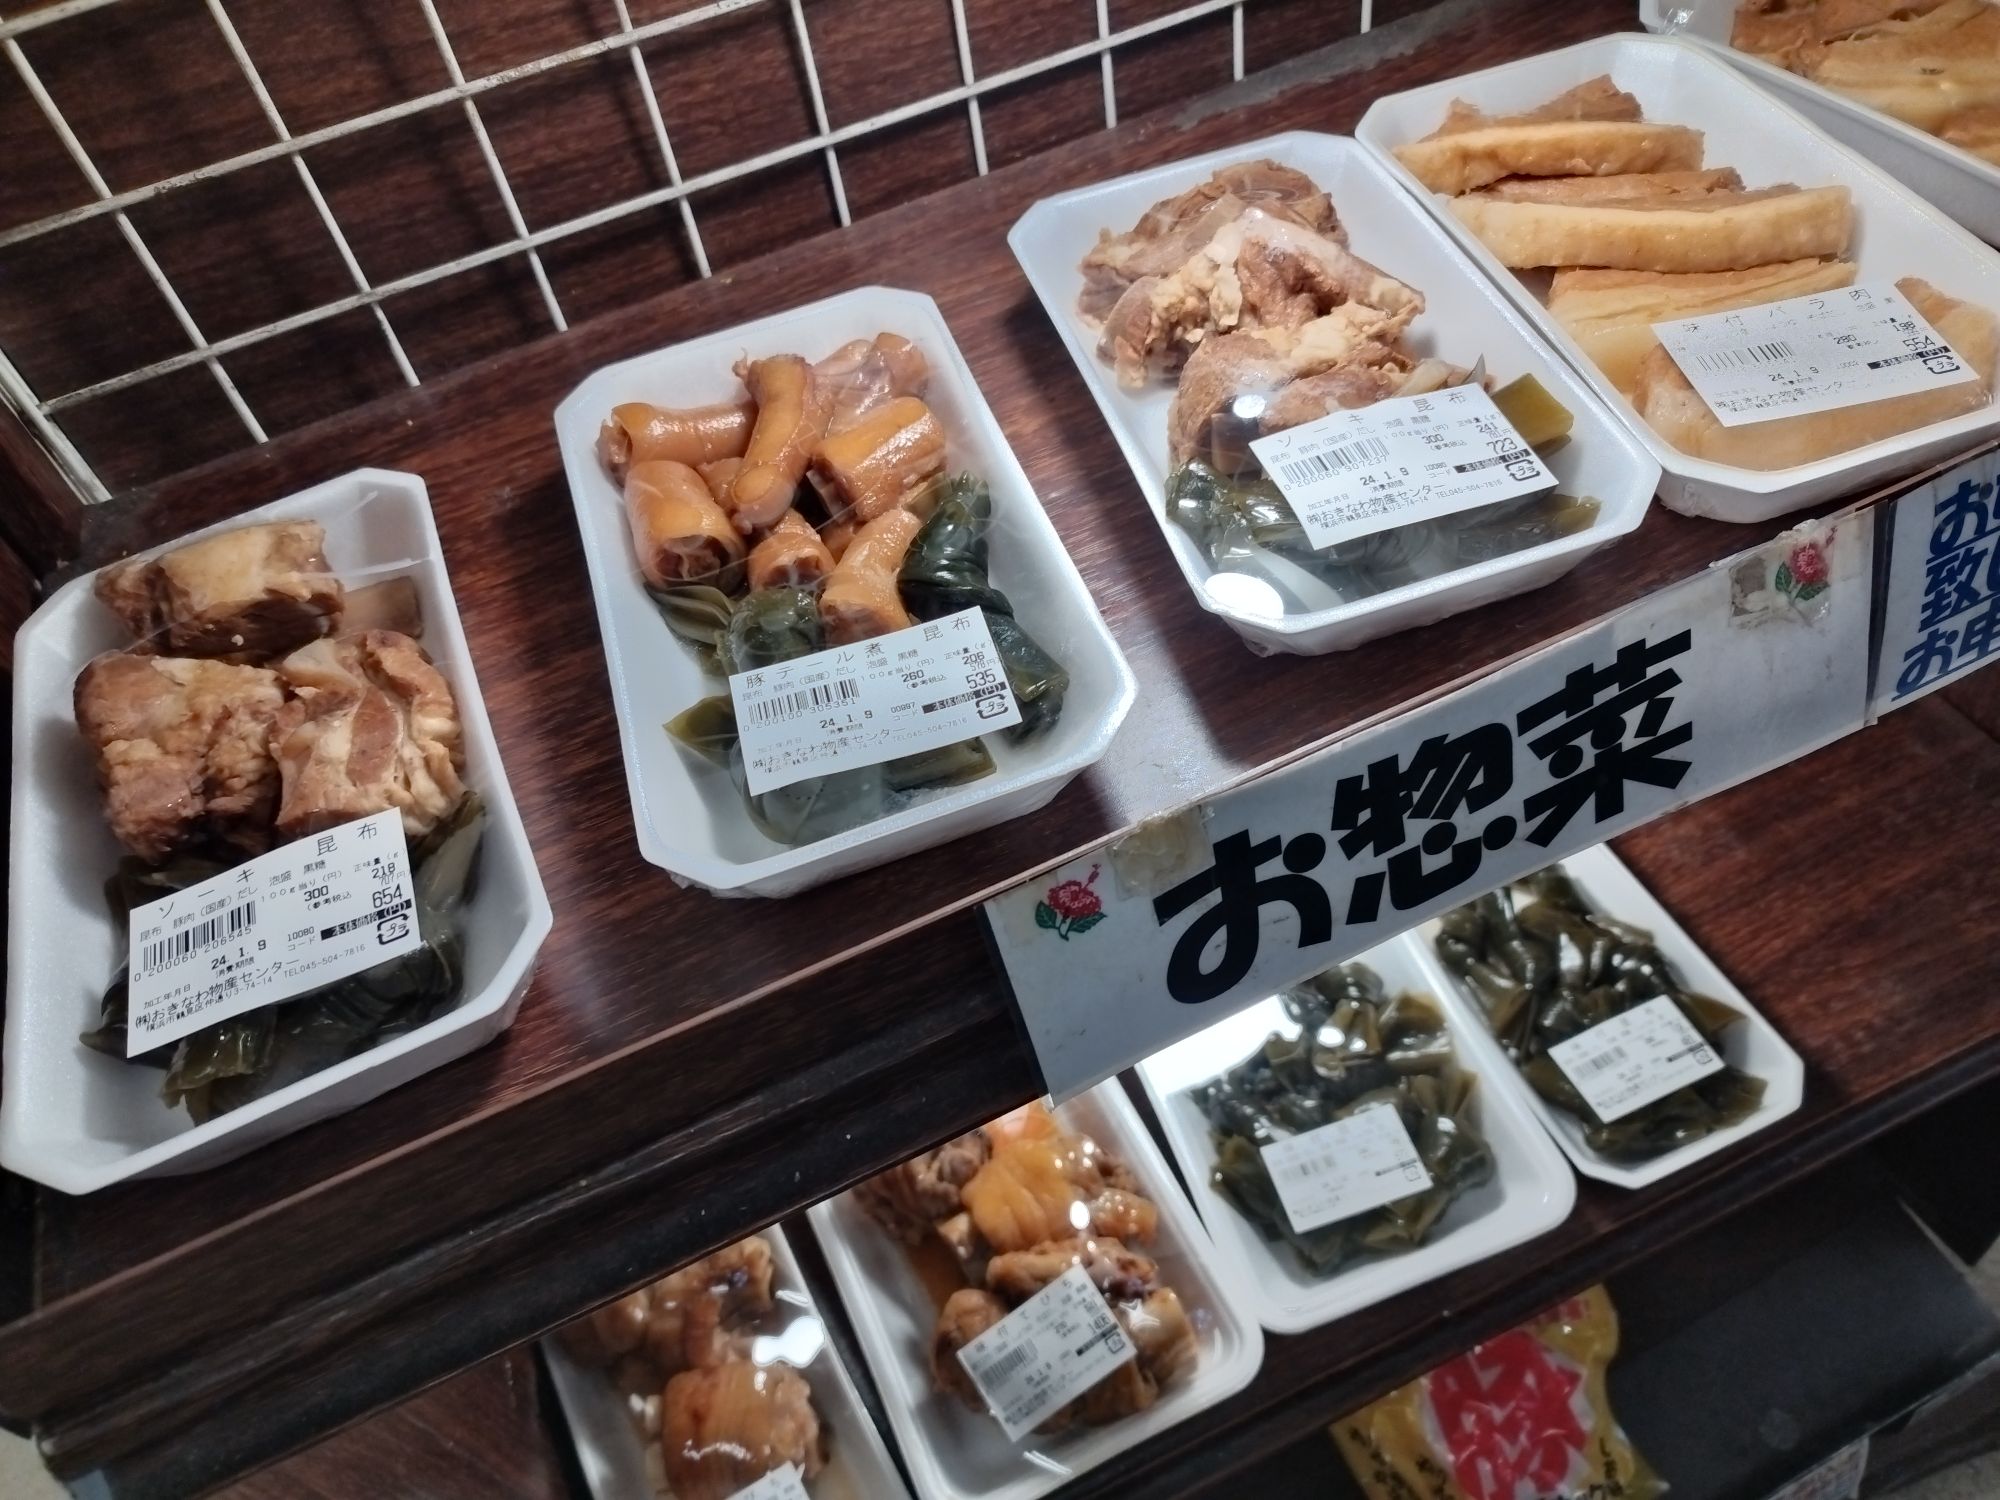 鶴見では沖縄のお惣菜も売られている